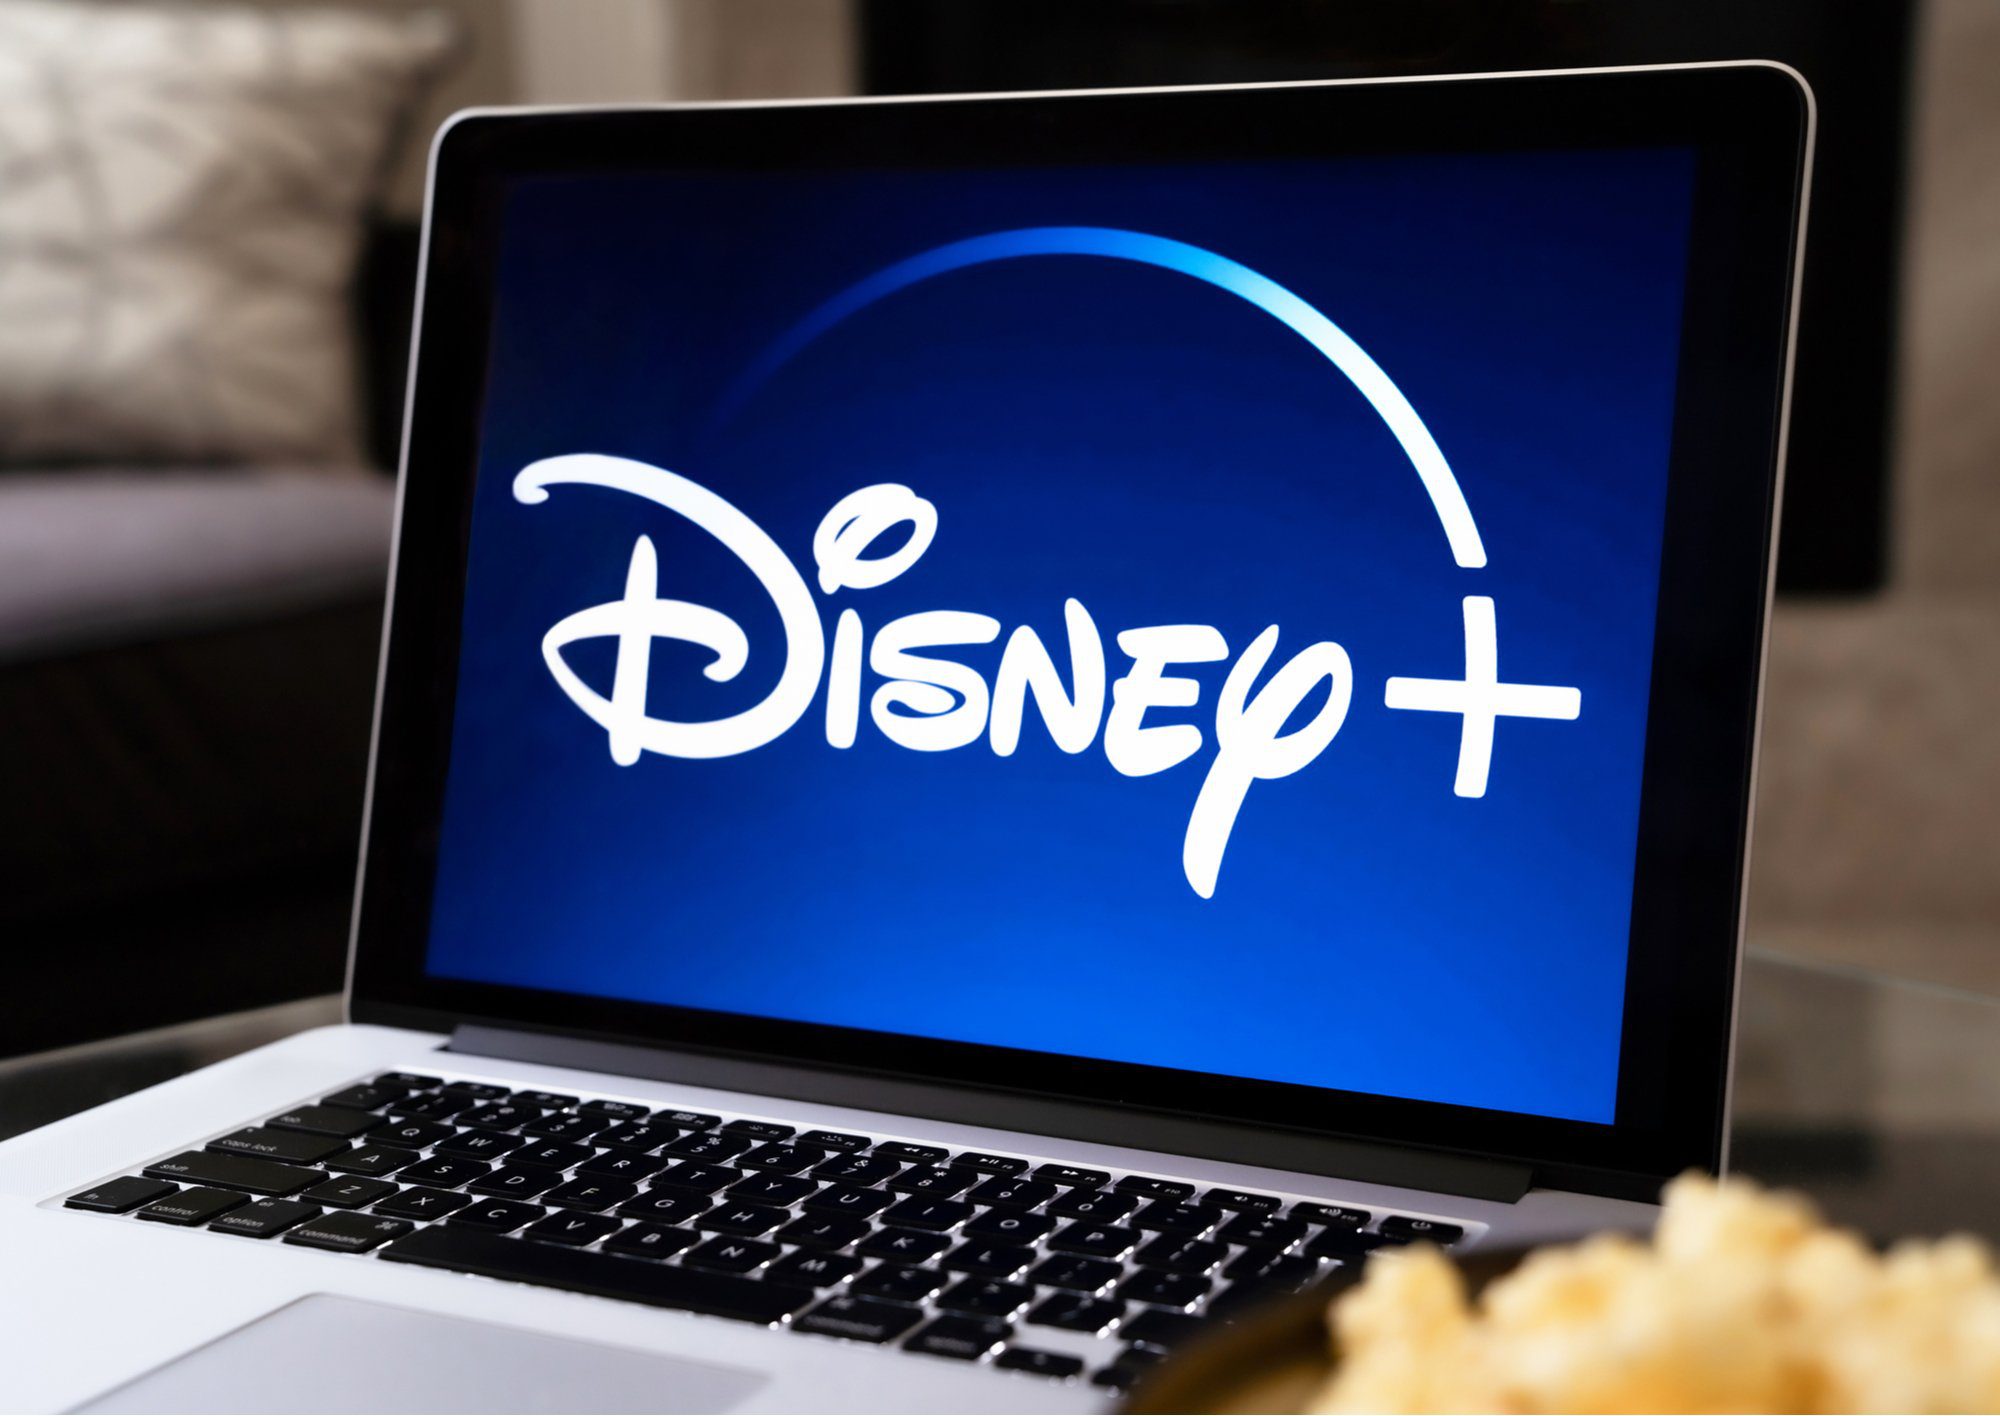 Disney +: hur drar du nytta av den kostnadsfria 7-dagars provperioden?